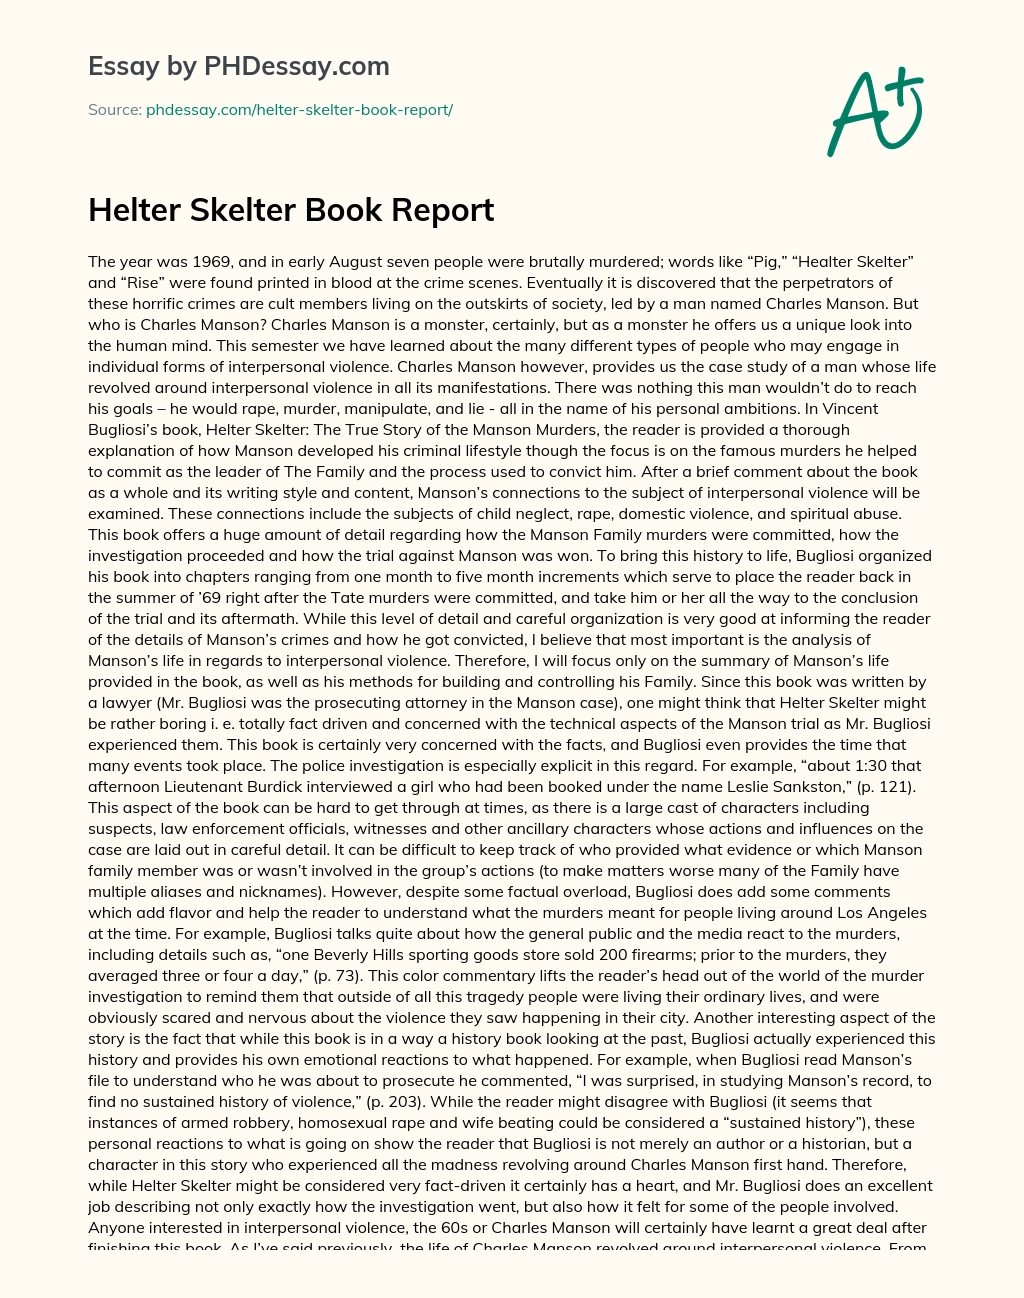 Helter Skelter Book Report essay